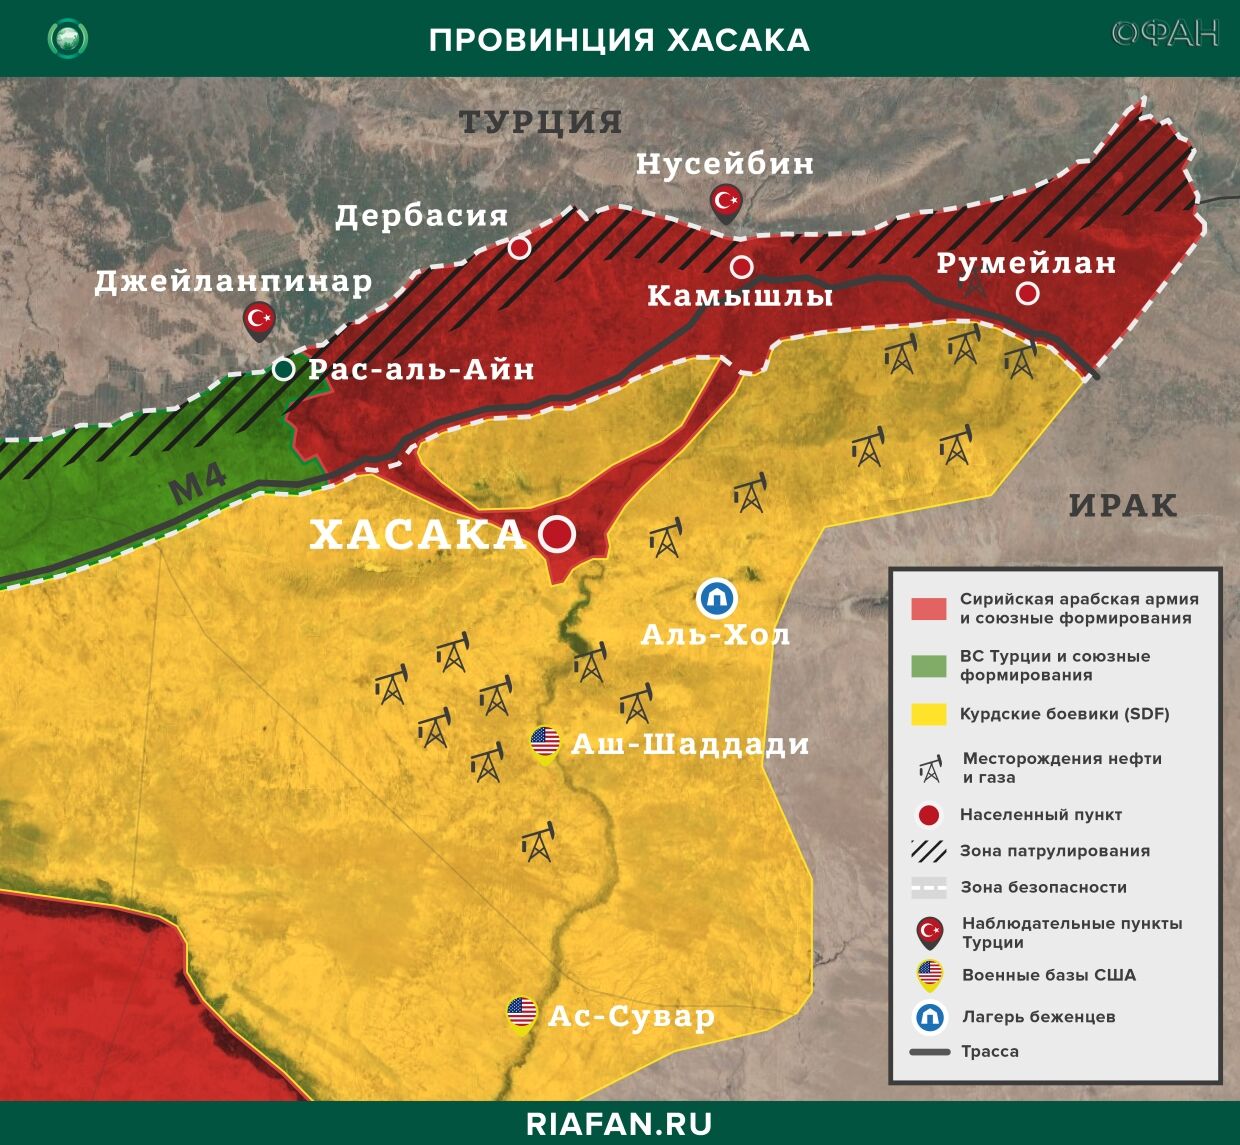 Noticias de Siria 27 Marzo 22.30: Турция провела патрулирование на шоссе М-4, жители Камышлы отказались пропустить конвой США